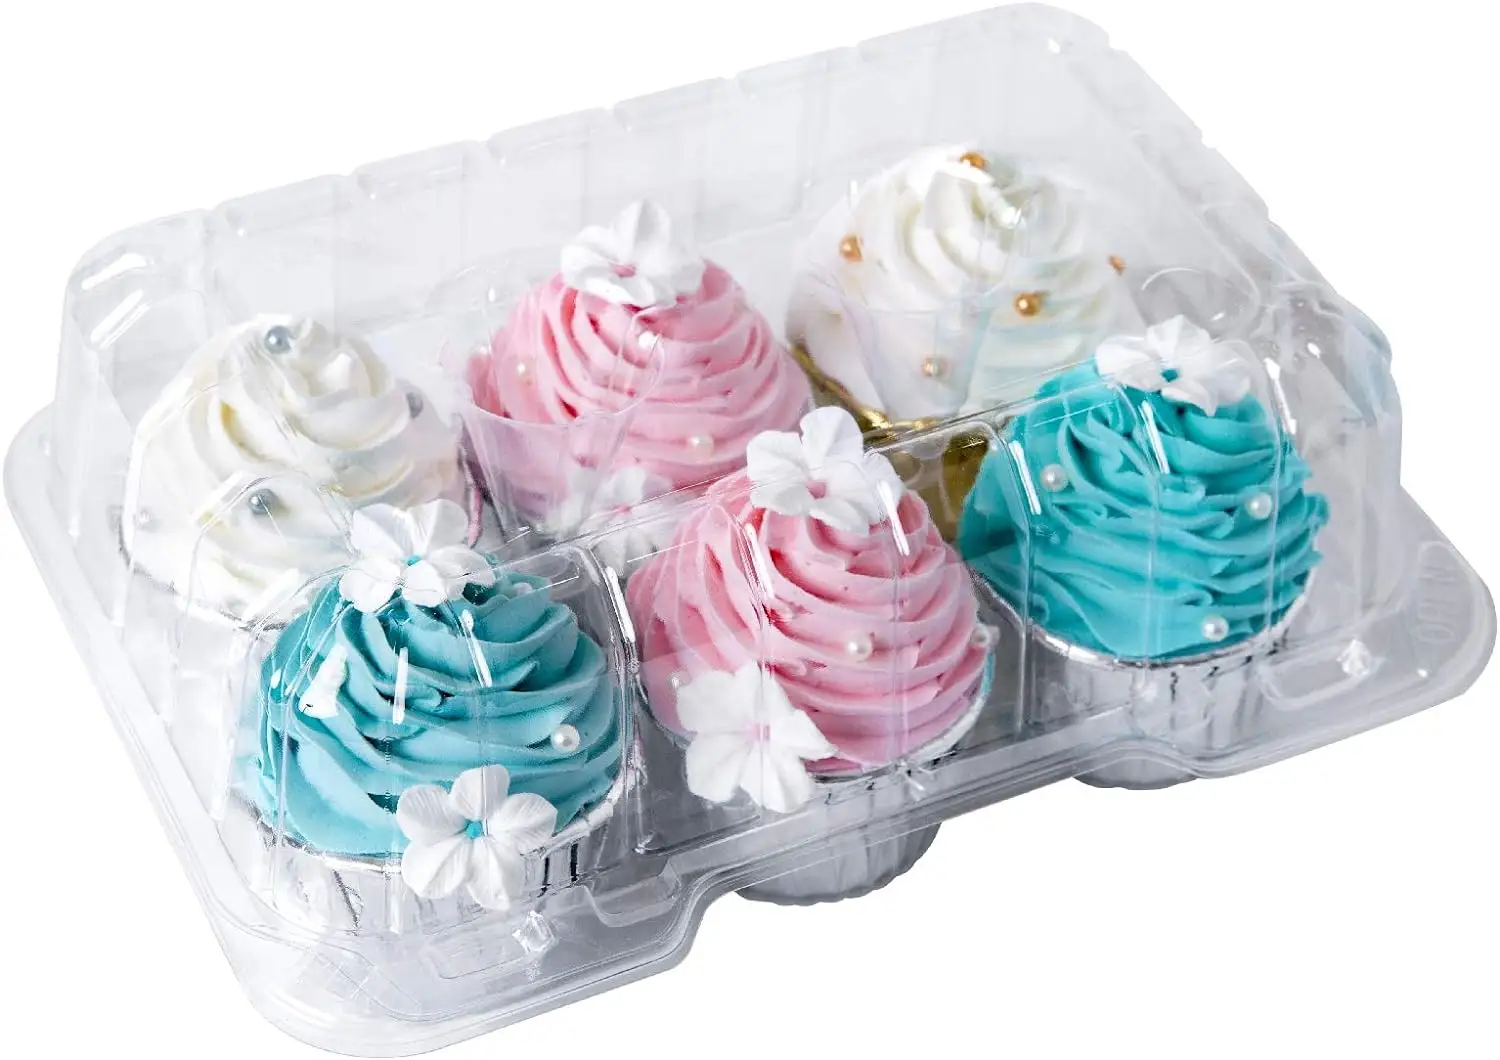 Özel 1 2 4 6 12 Cupcake taşıyıcı tutucular temizle plastik Blister kapaklı konteynerler tatlı kekler ambalaj kutusu kubbe kapaklı